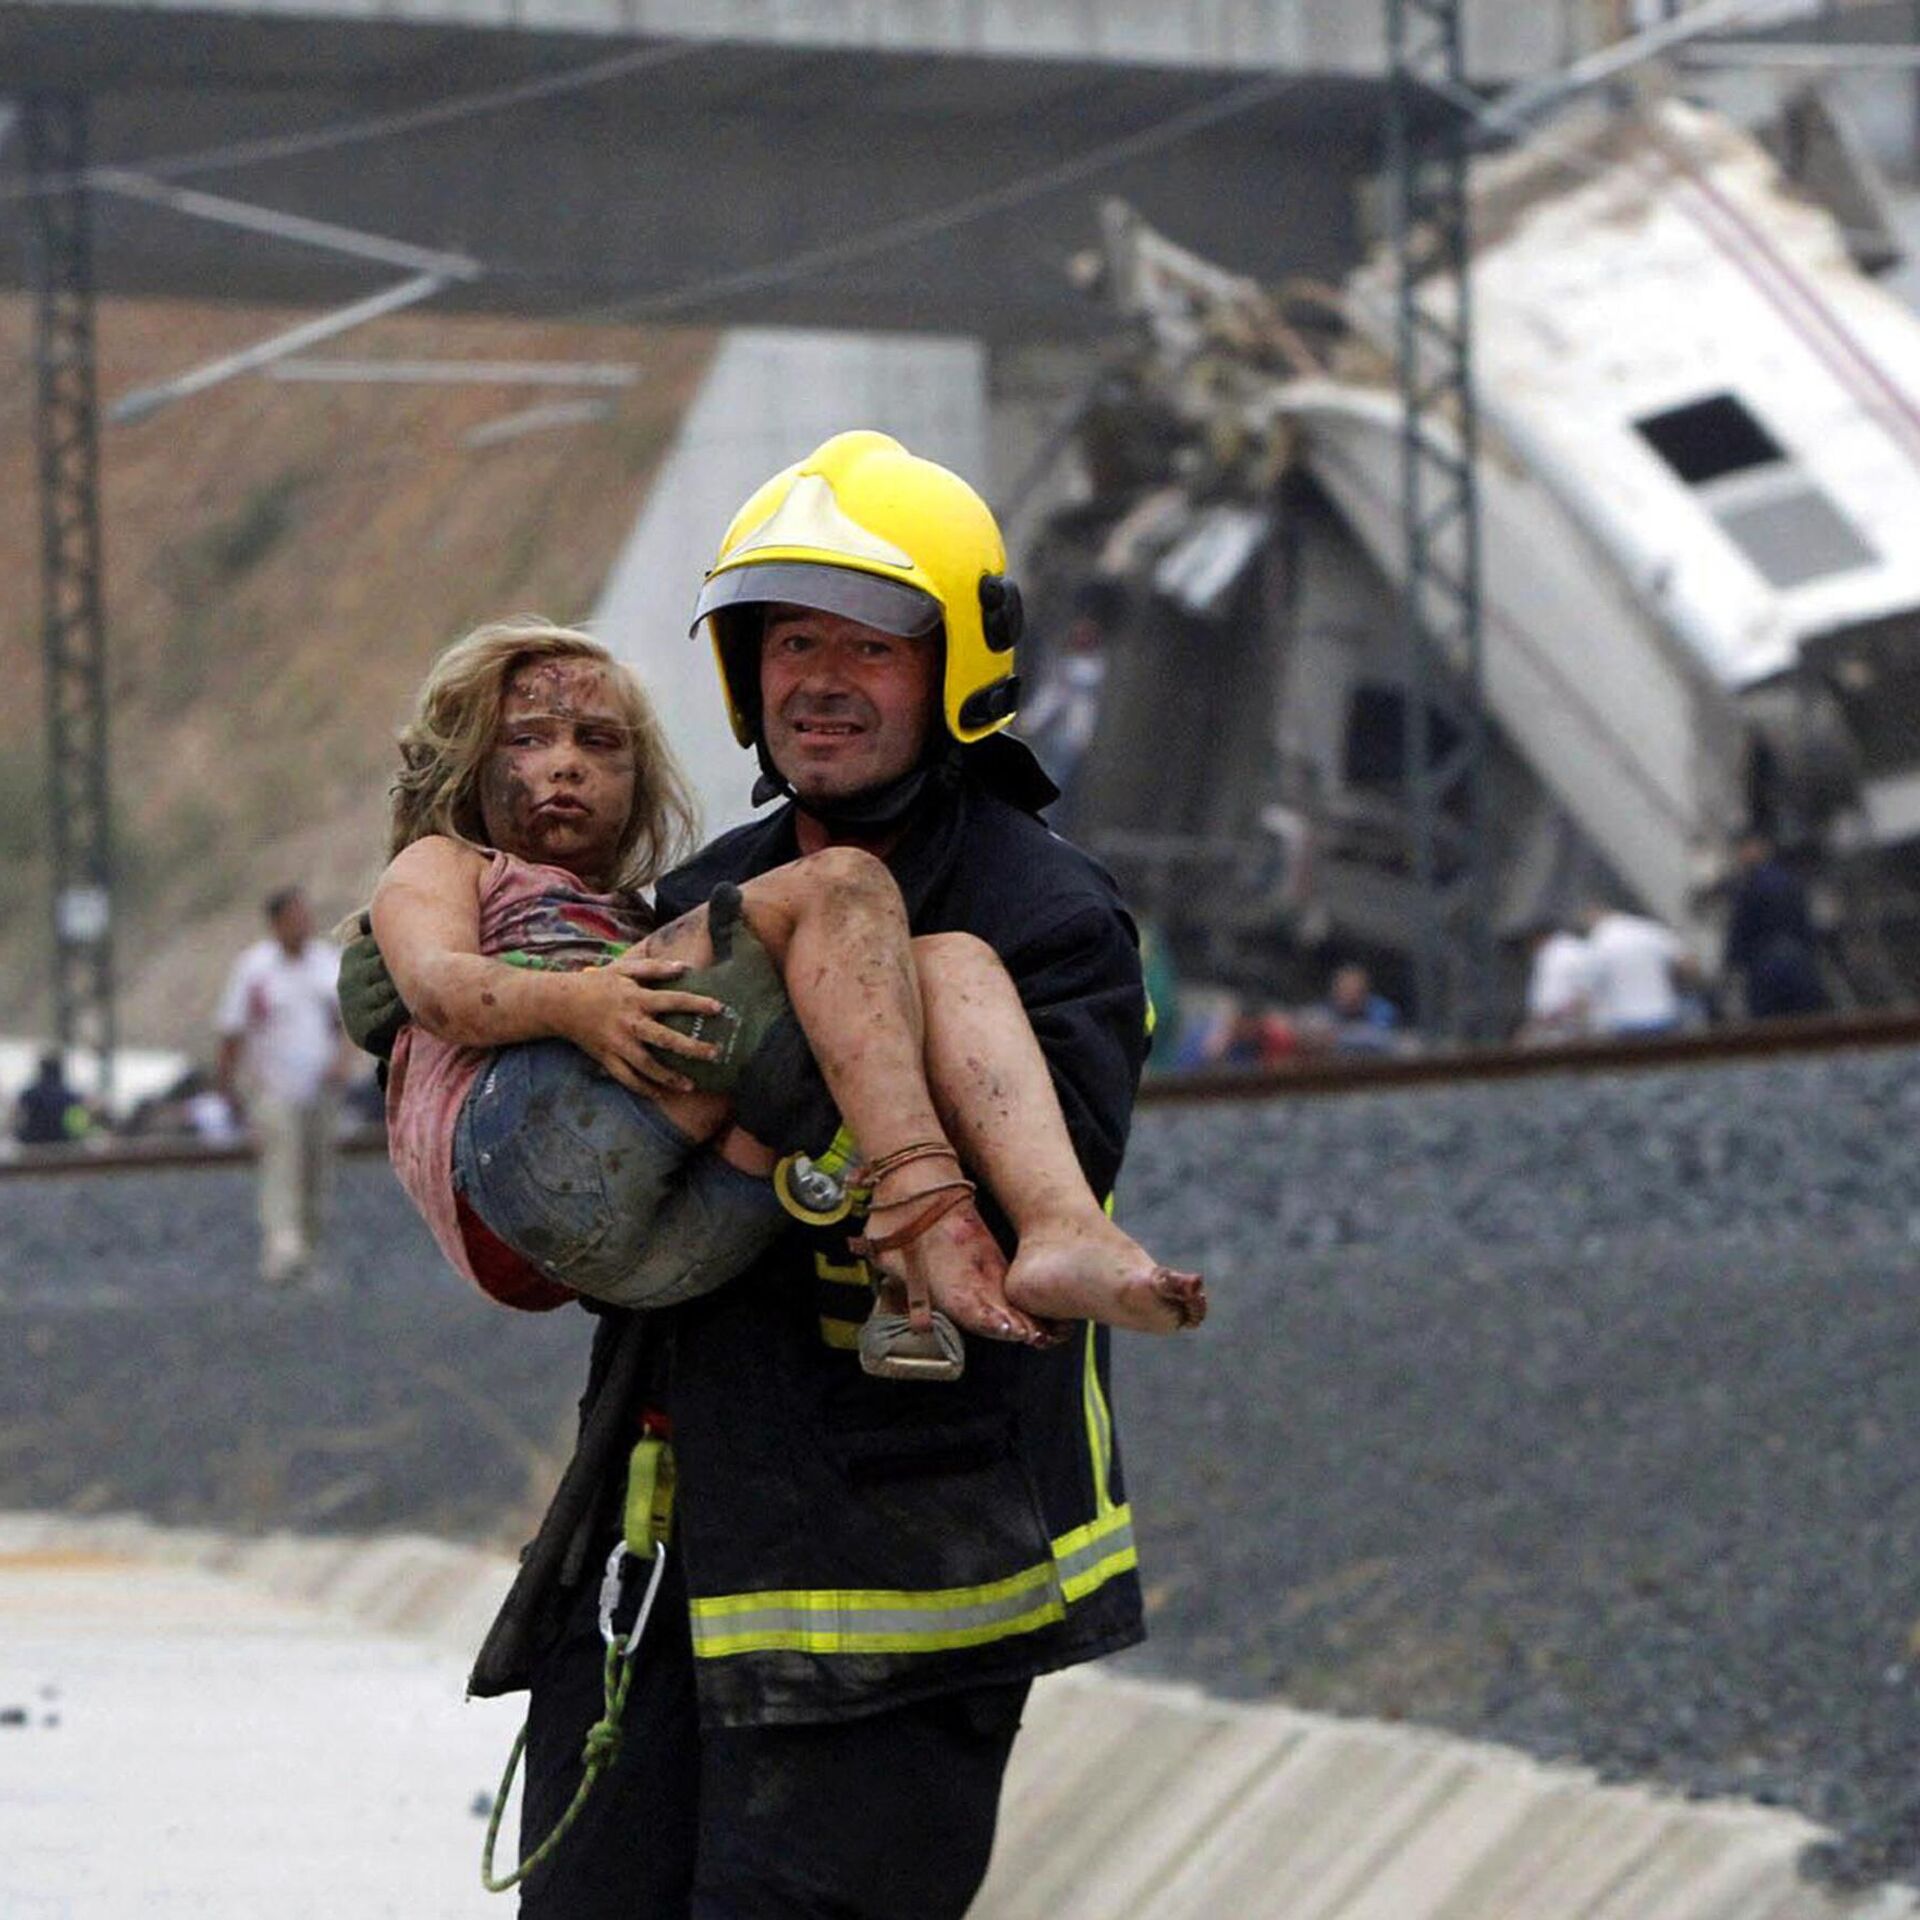 Видео спасения людей. Спасатели спасают людей. Пожарные спасают людей.